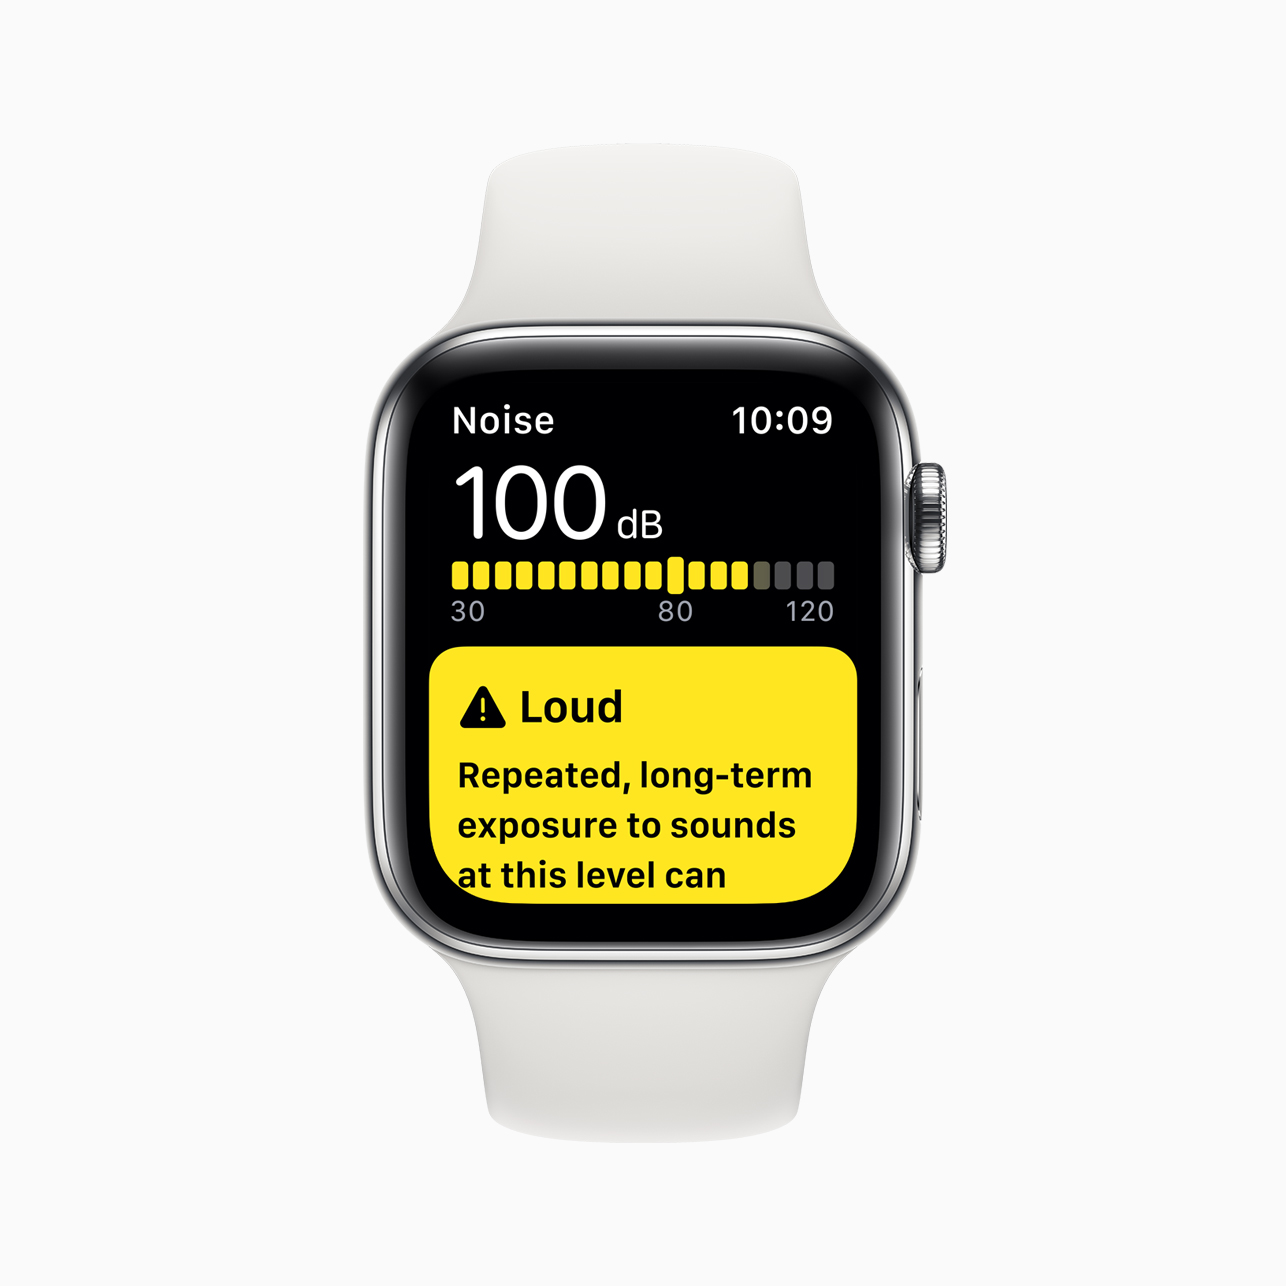 Spoločnosť Apple Watch Series 5 bola predstavená s novým vždy zapnutým sietnicovým displejom s variabilnými obnovovacími frekvenciami a 18-hodinovou výdržou batérie už od 399 USD v USA